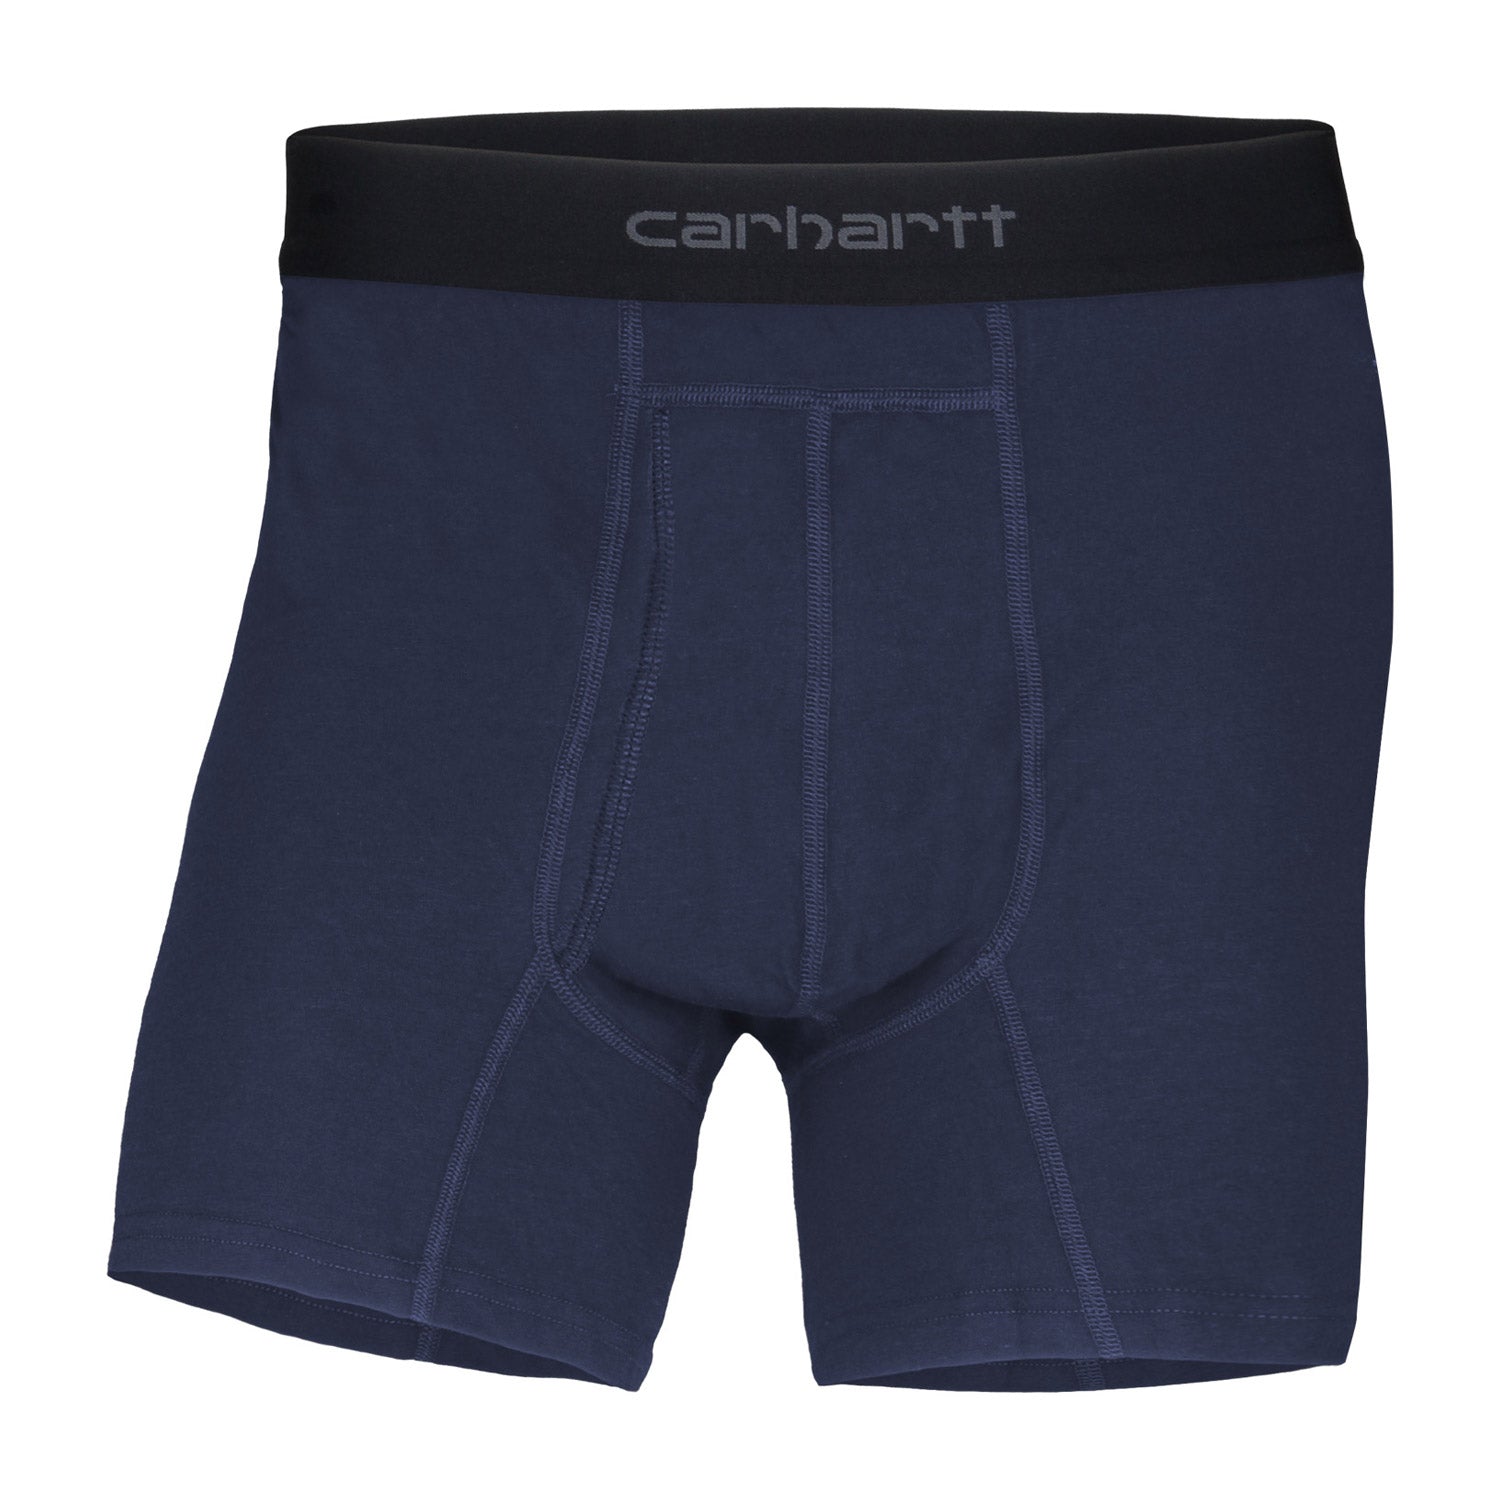 Carhartt Men's 5" Basic Boxer Brief 2-Pack - Work World - Workwear, Work Boots, Safety Gear